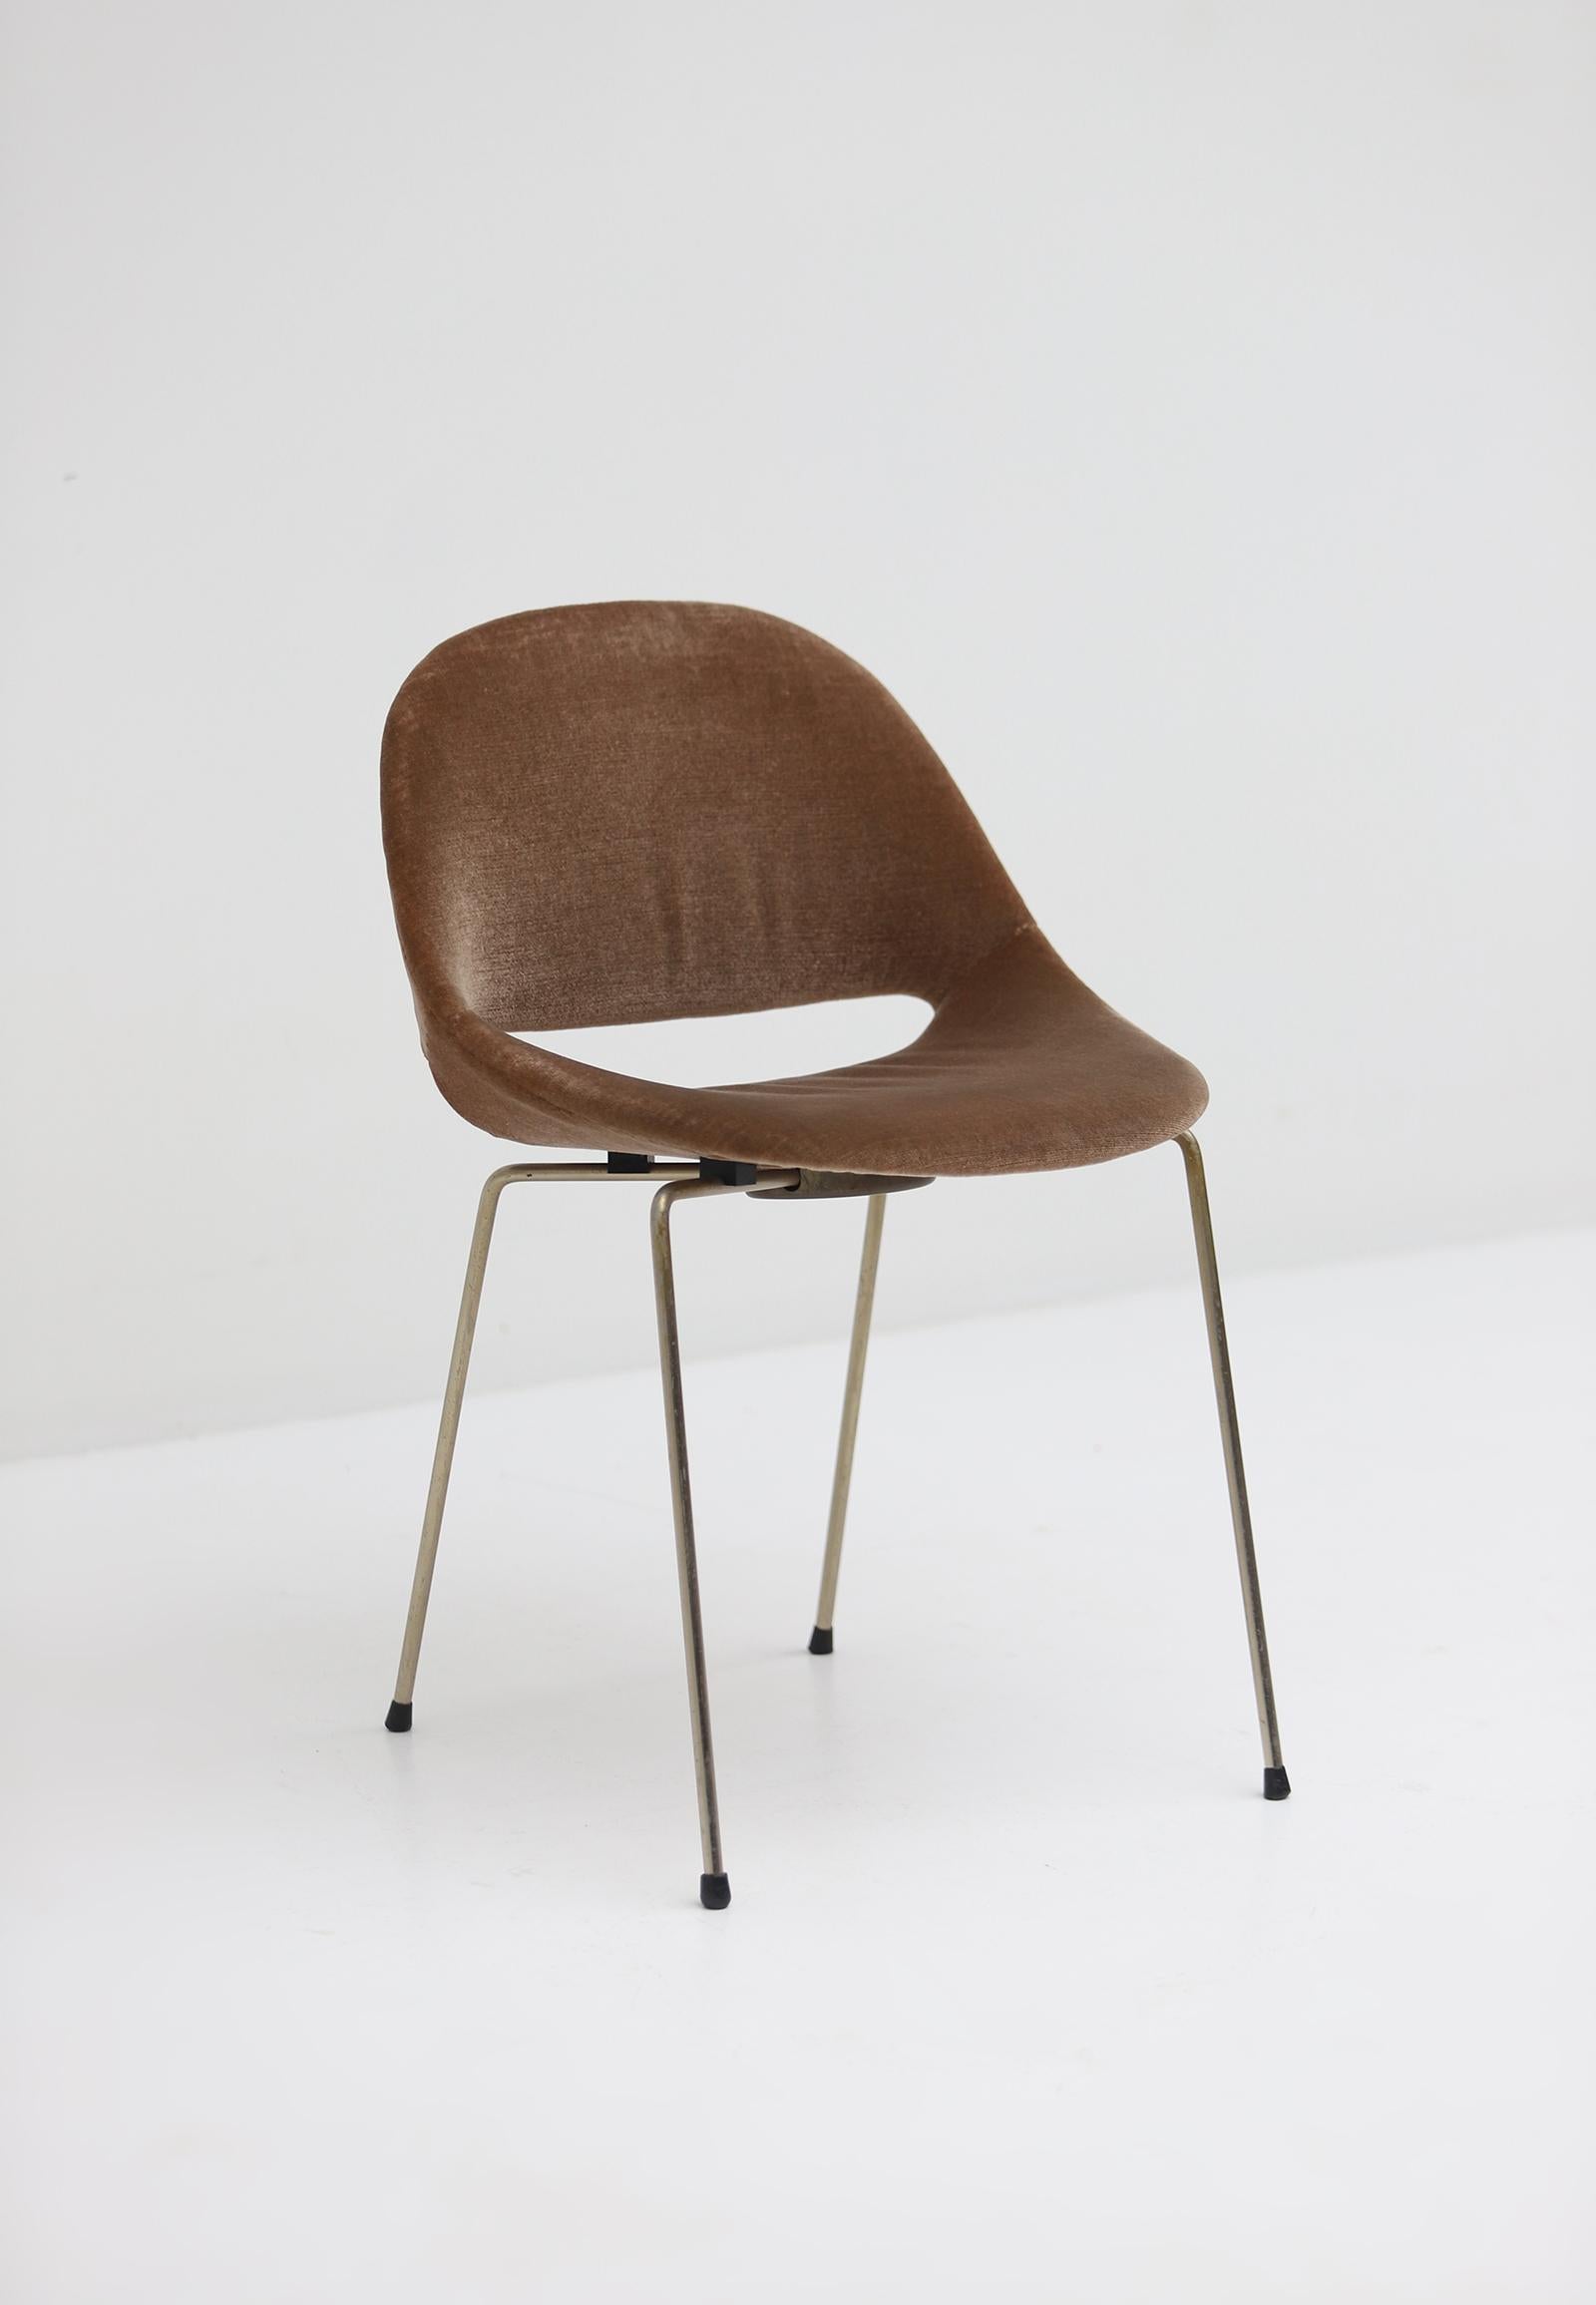 La chaise SL58 a été conçue par l'architecte belge Léon Stynen en 1958. Il a été réalisé en collaboration avec Stynen et son assistant, l'architecte Paul de Meyer. La chaise a été conçue pour Straatman, Loral & Cie, une société anversoise qui l'a